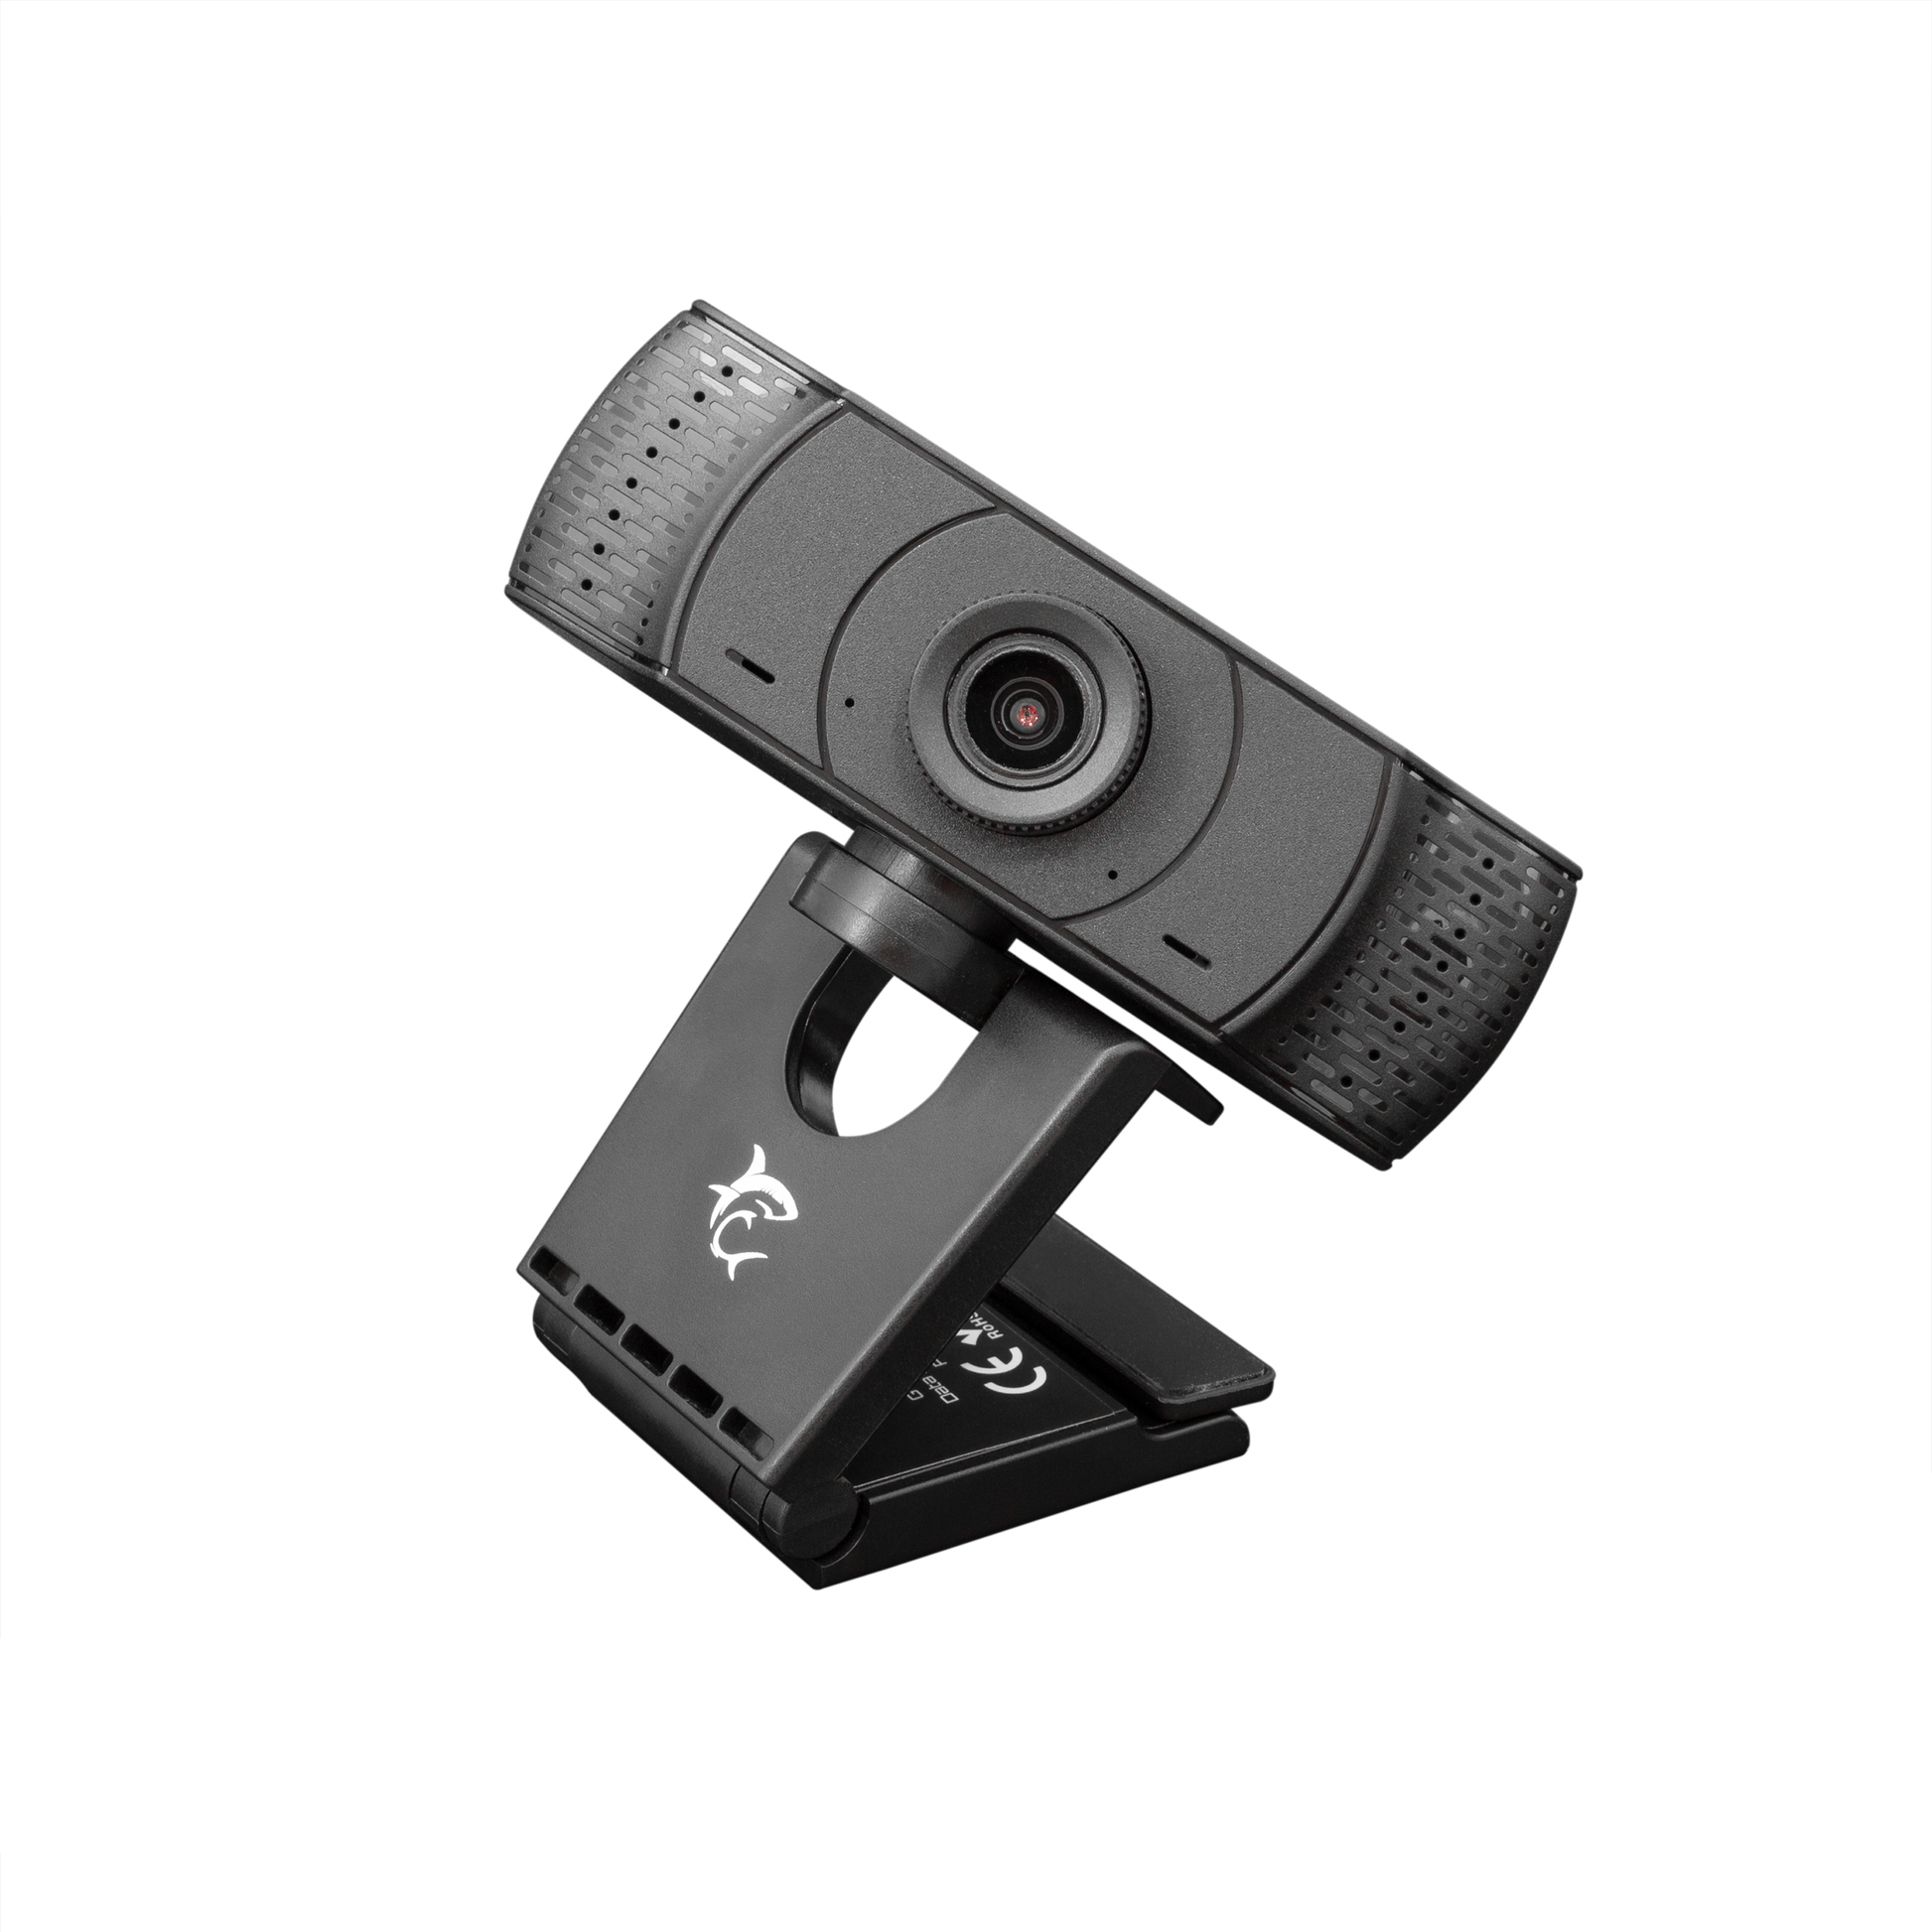 OWL Webcam - The AzTech